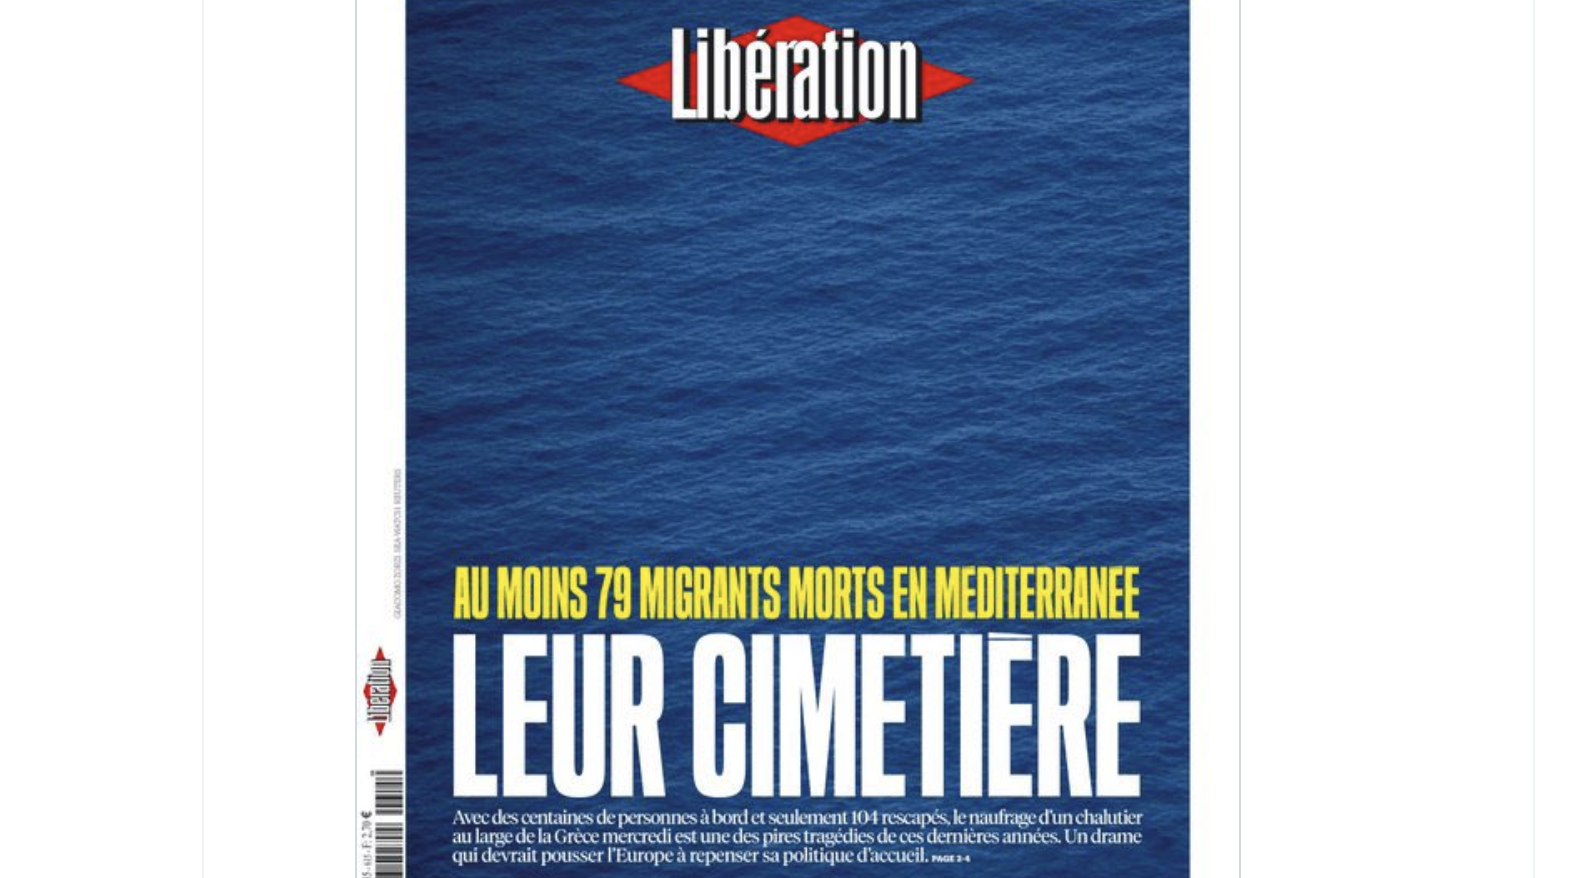 Le quotidien “Libération” a le droit d’instrumentaliser les drames liés à l’immigration, lui